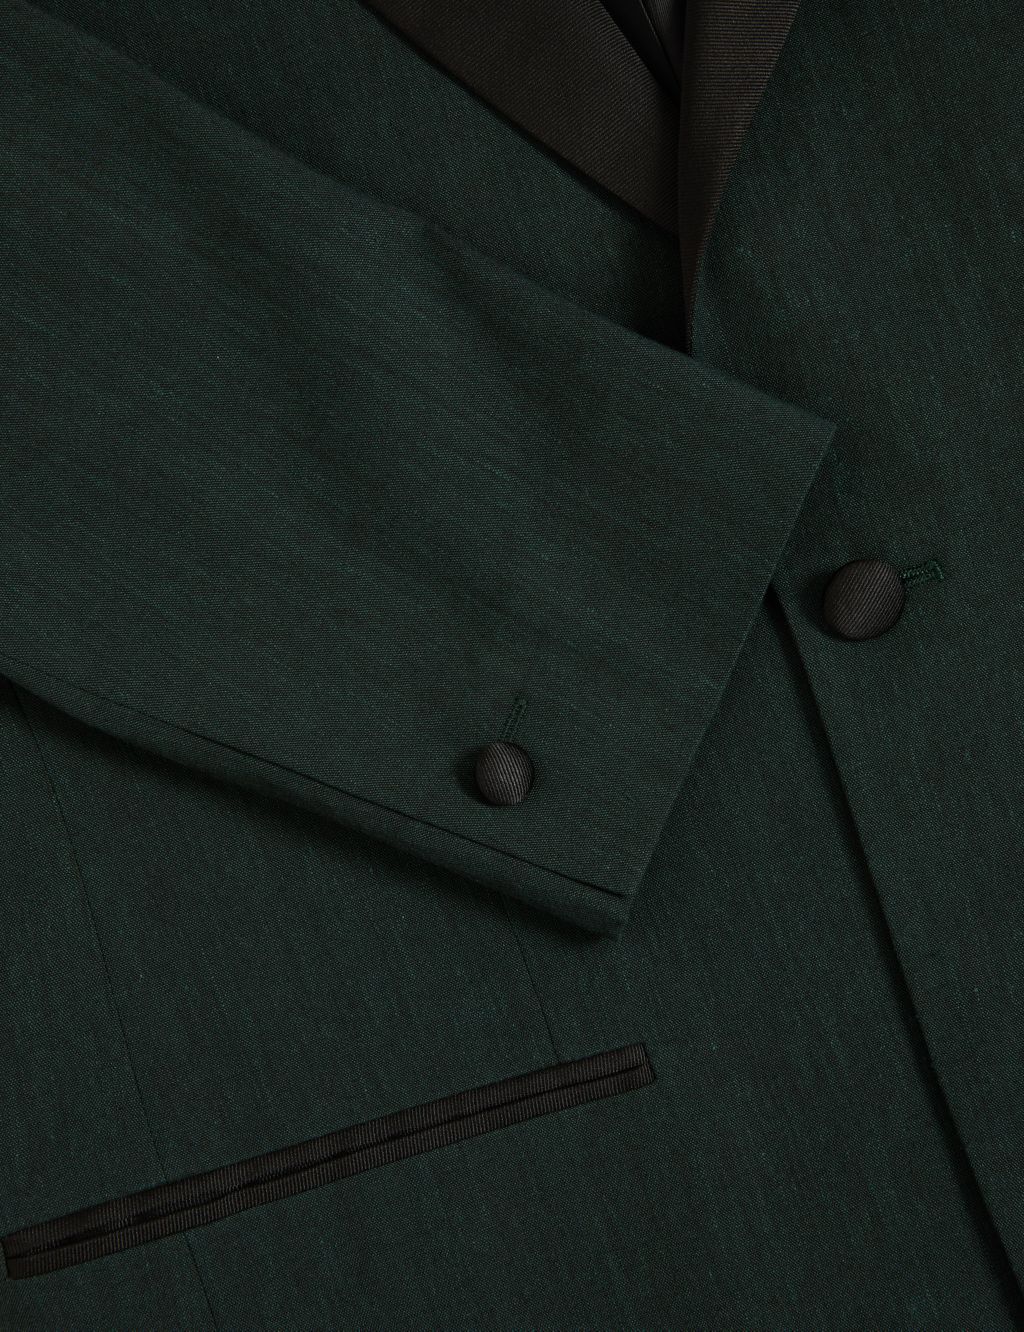 Tailored Fit Italian Linen Miracle™ Tuxedo Jacket image 6